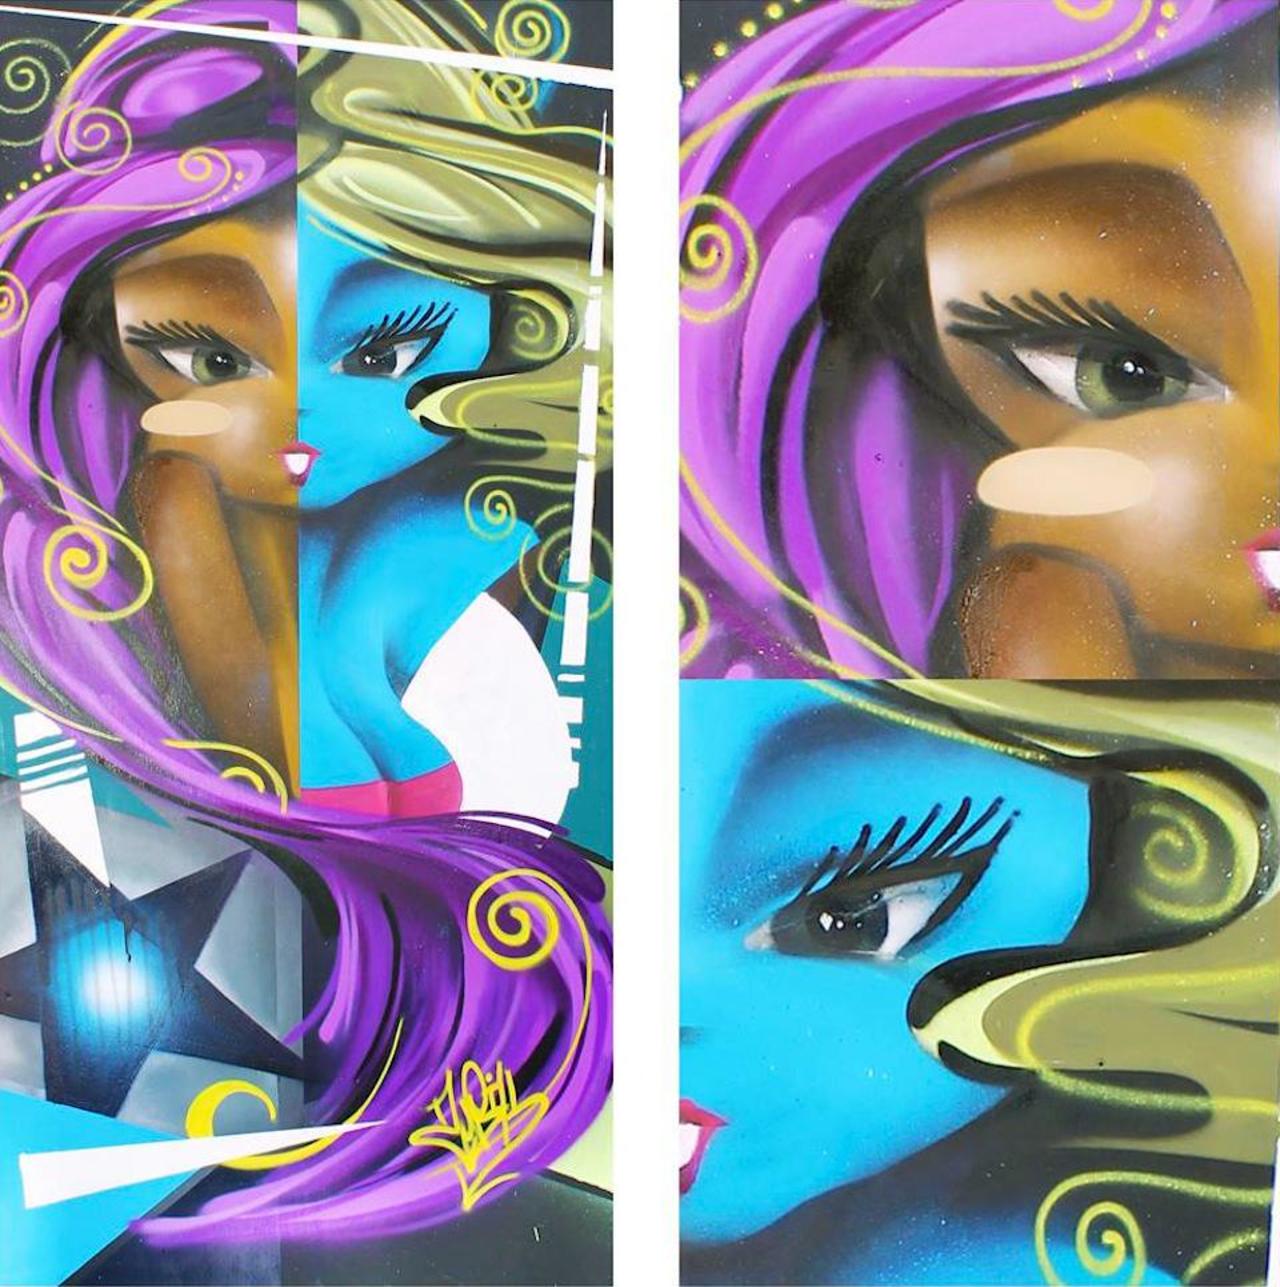 Women of Street Art: work of Zurik #murals #art #streetart #urbanart #Graffiti #Zurik http://t.co/ZCQW5p22vJ